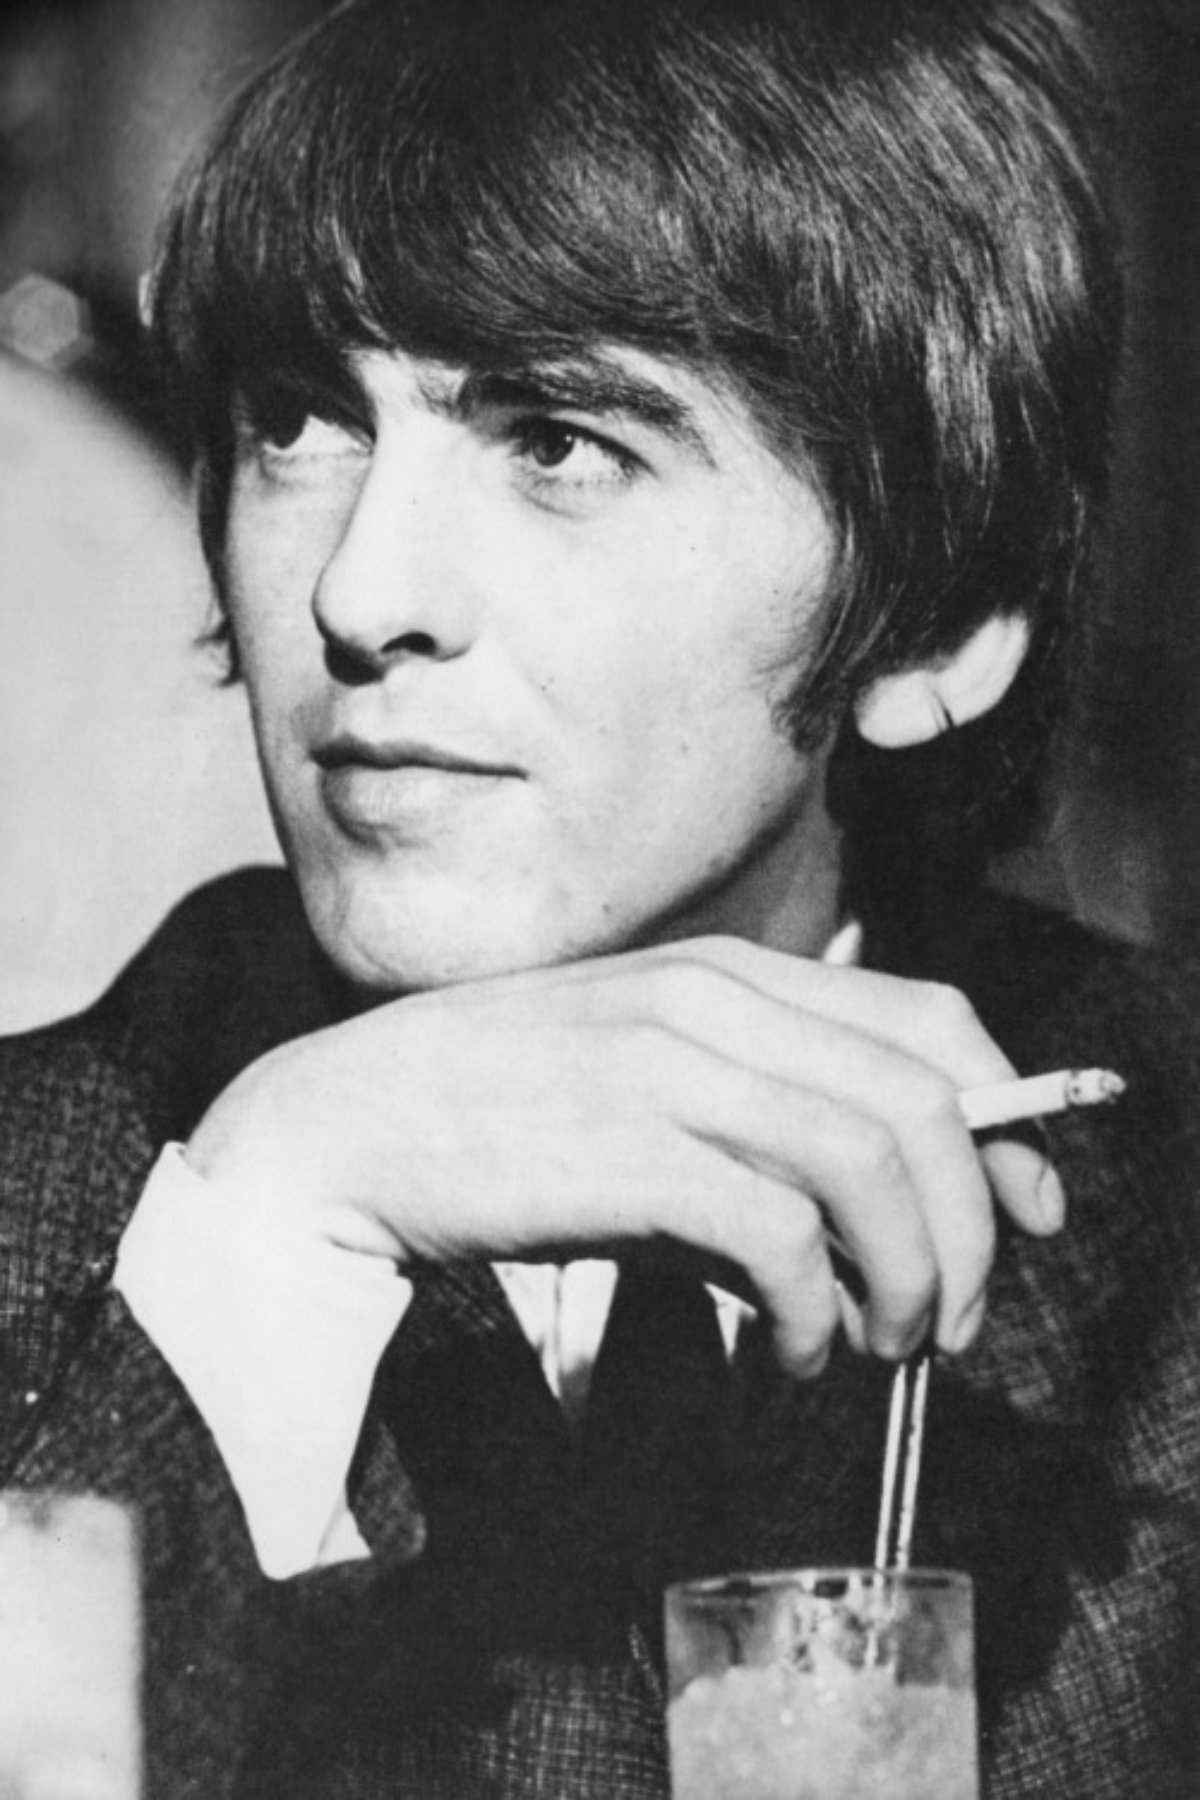 Harrison es más conocido como el guitarrista principal de The Beatles.